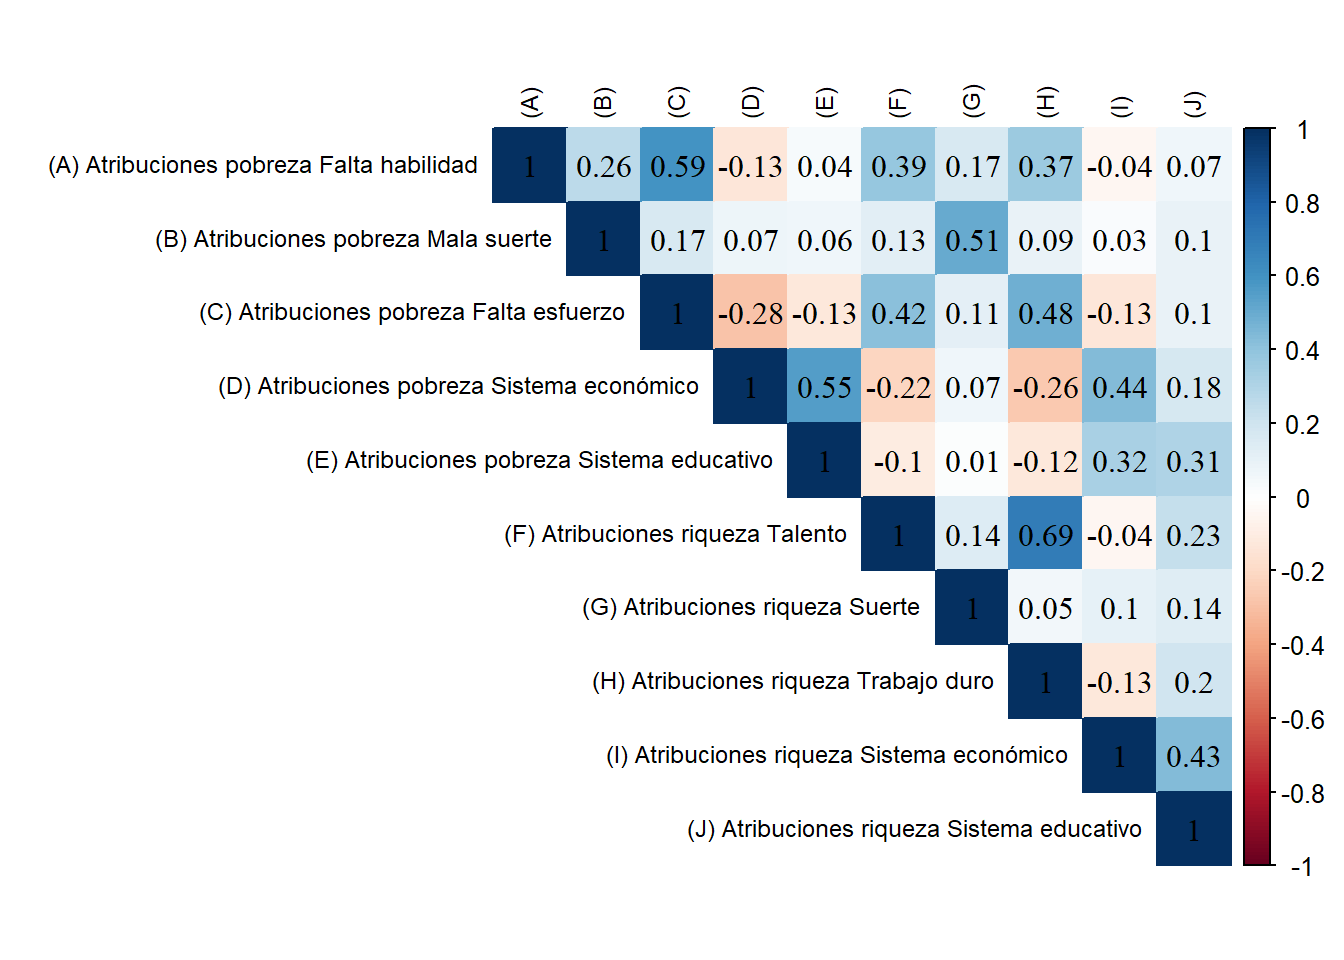 Matriz de Correlaciones Policórica para Atribuciones de pobreza y riqueza